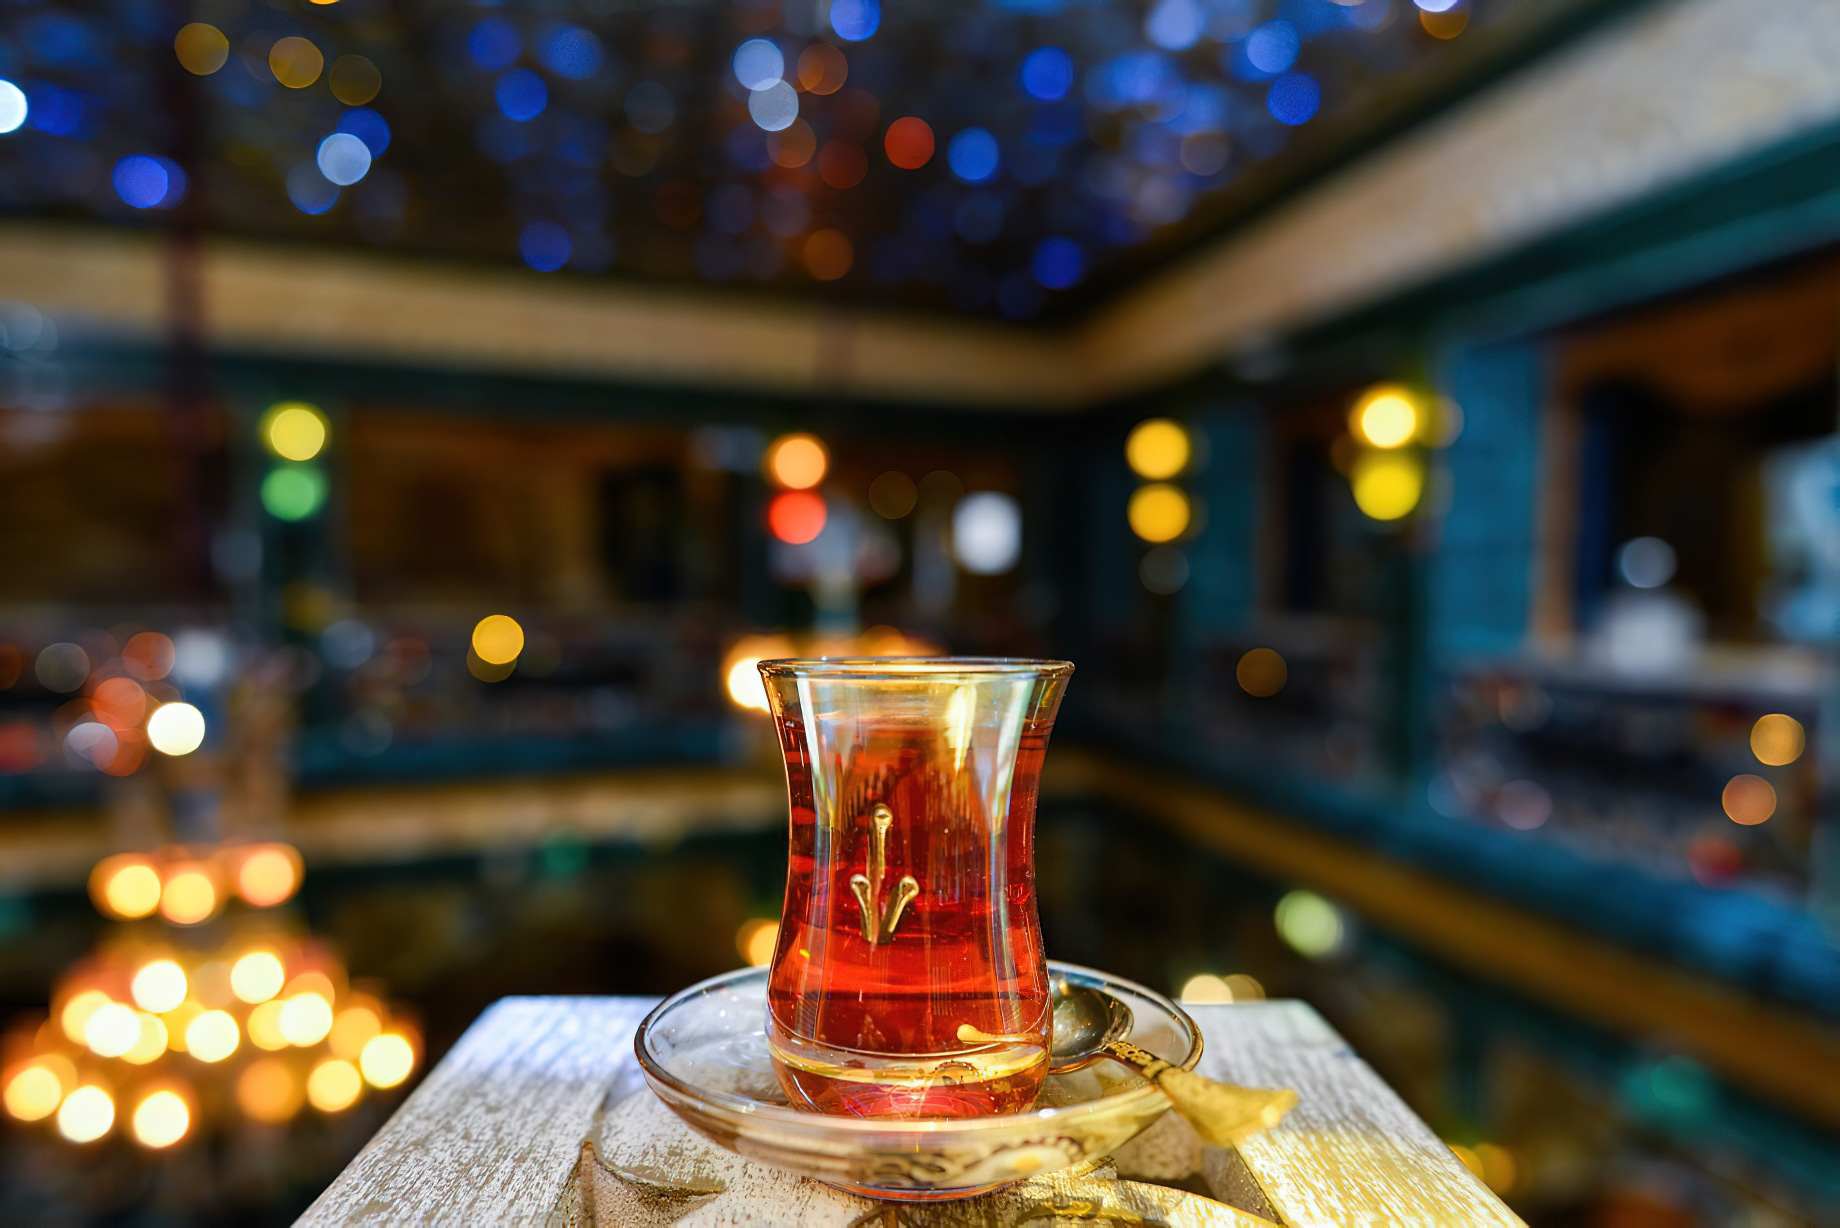 Sharq Village & Spa, A Ritz-Carlton Hotel – Doha, Qatar – At Parisa Souq Waqif Restaurant Cocktail